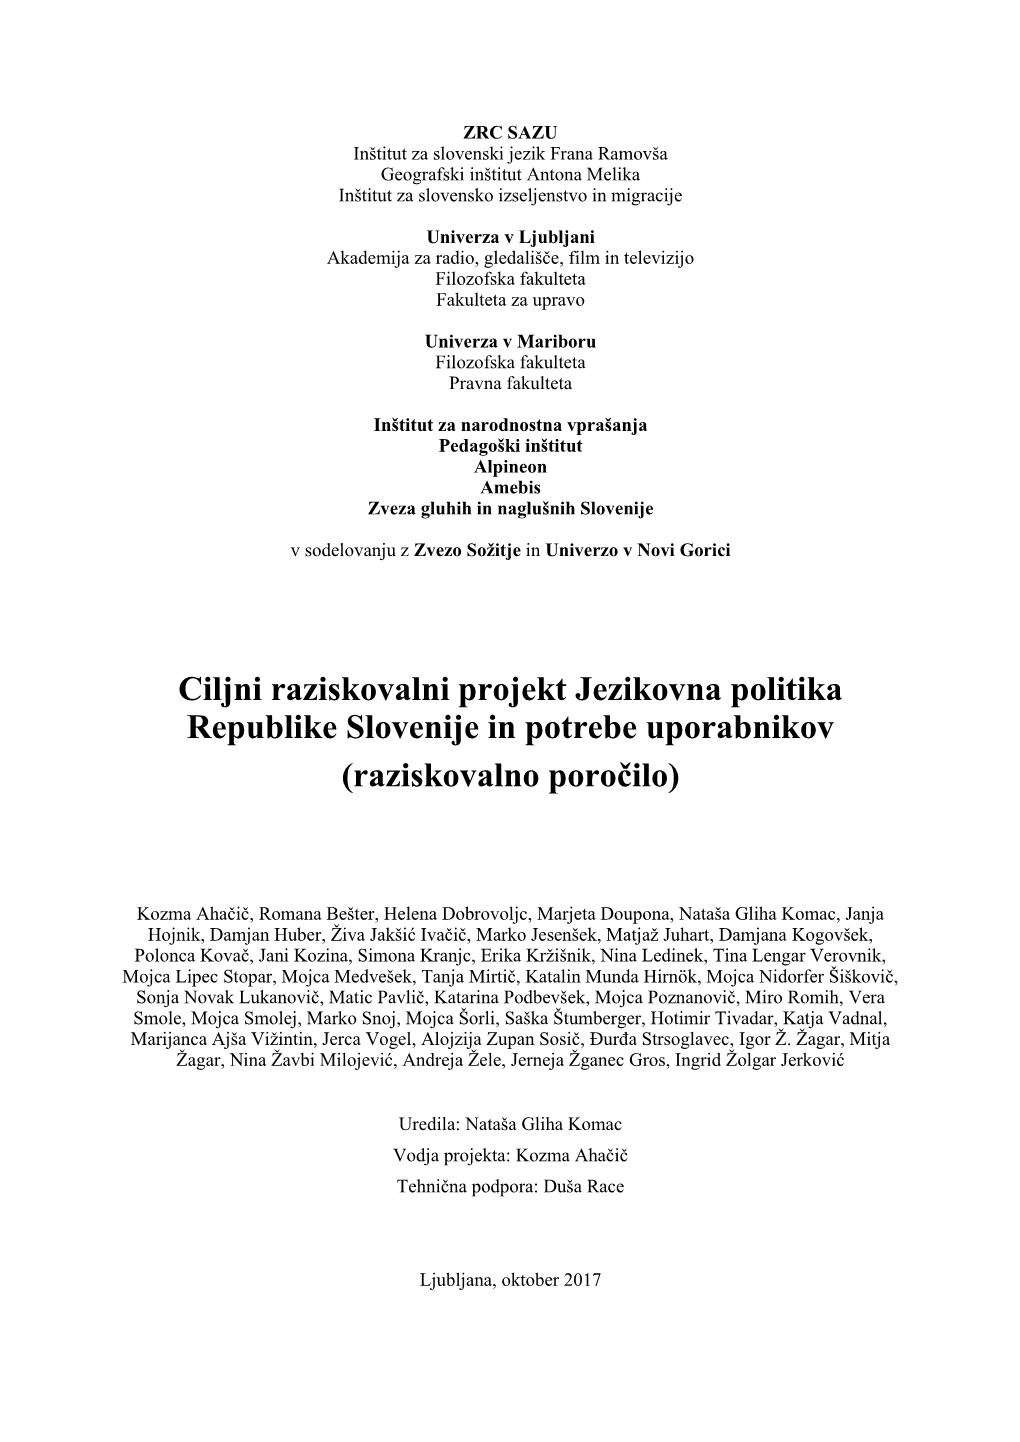 Ciljni Raziskovalni Projekt Jezikovna Politika Republike Slovenije in Potrebe Uporabnikov (Raziskovalno Poročilo)